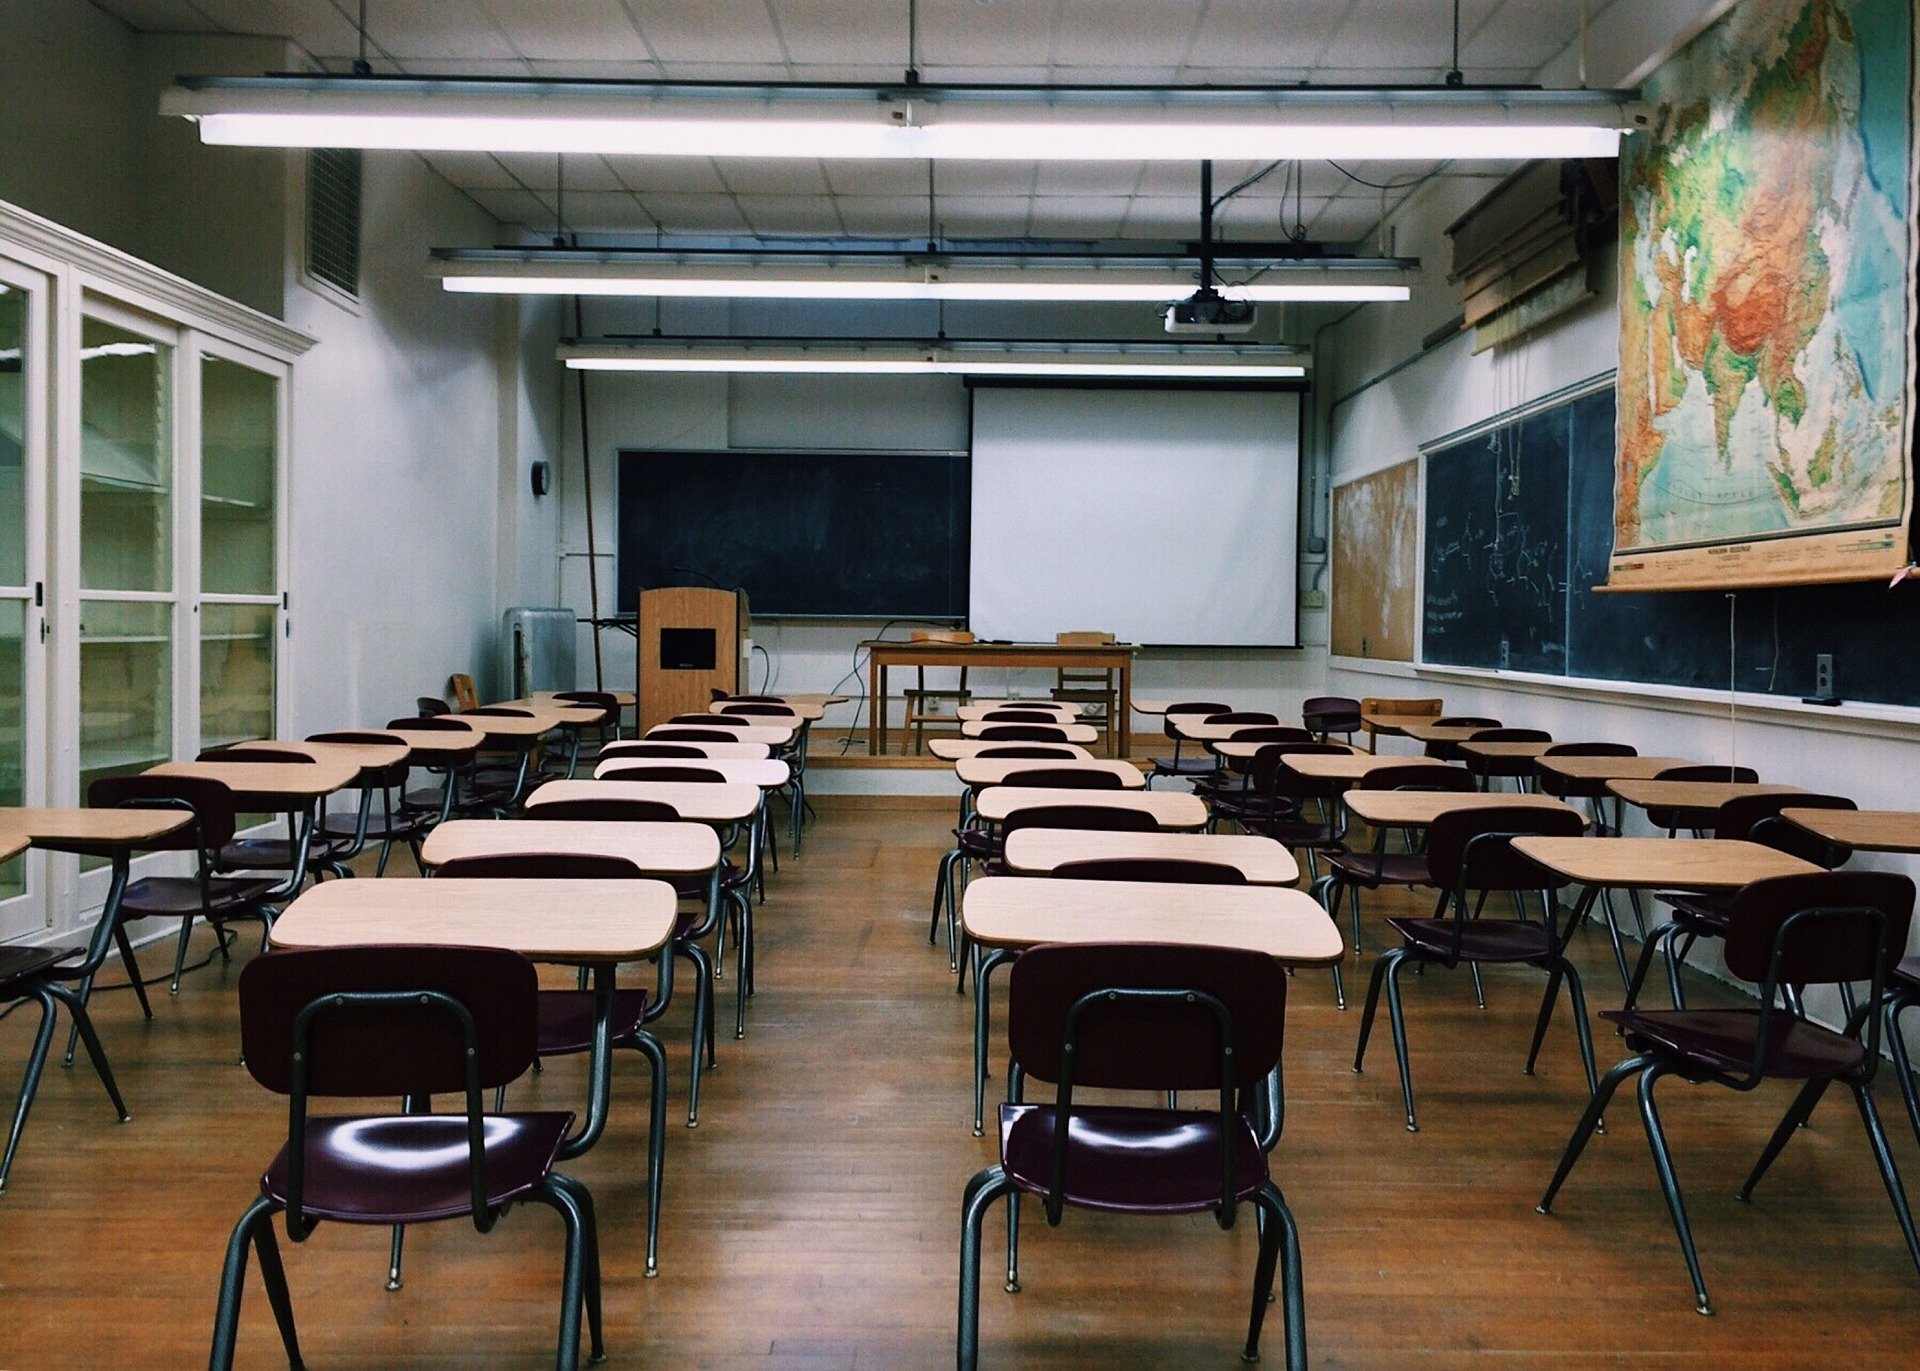 Notícia] Escolas estaduais da Palhoça denunciam abandono e precariedade na  volta às aulas - UFSC à Esquerda